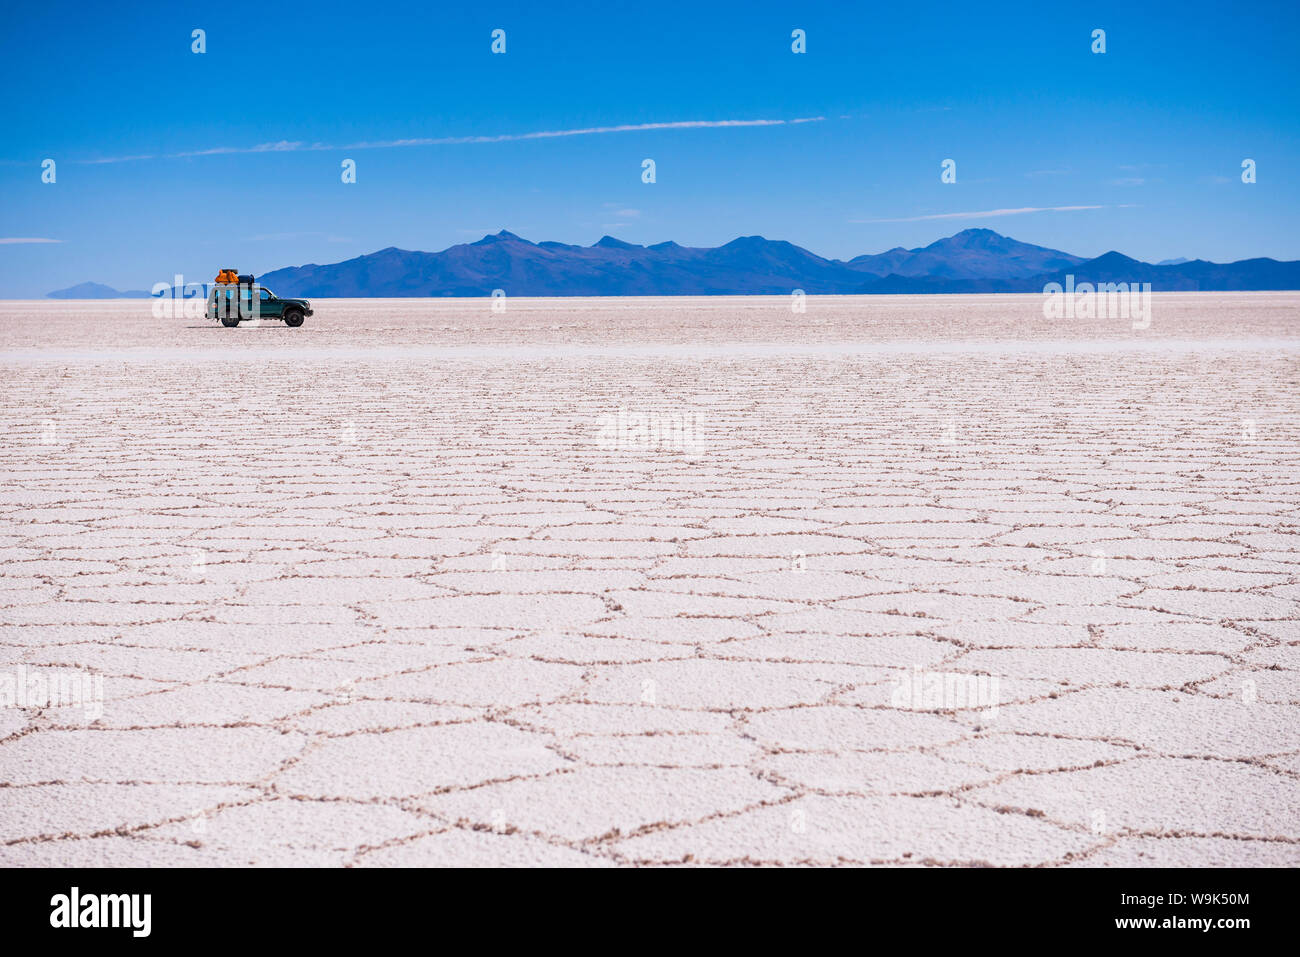 A 4WD tour of Uyuni Salt Flats (Salar de Uyuni), Uyuni, Bolivia, South America Stock Photo